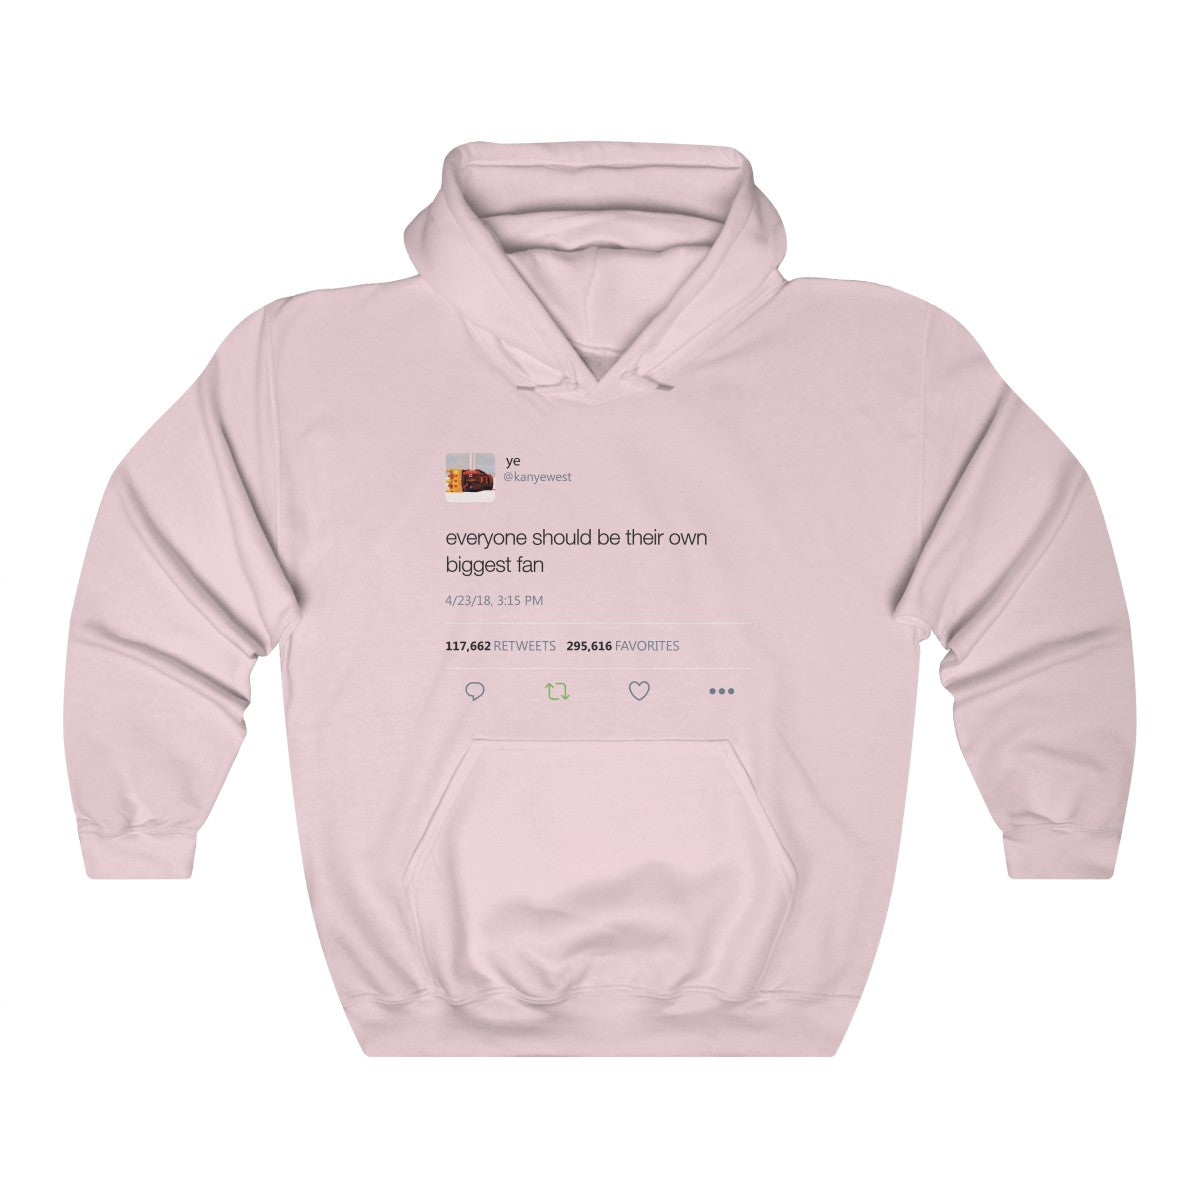 Everyone should be their own biggest fan - Kanye West Tweet Inspired Unisex Hooded Sweatshirt Hoodie-Light Pink-S-Archethype